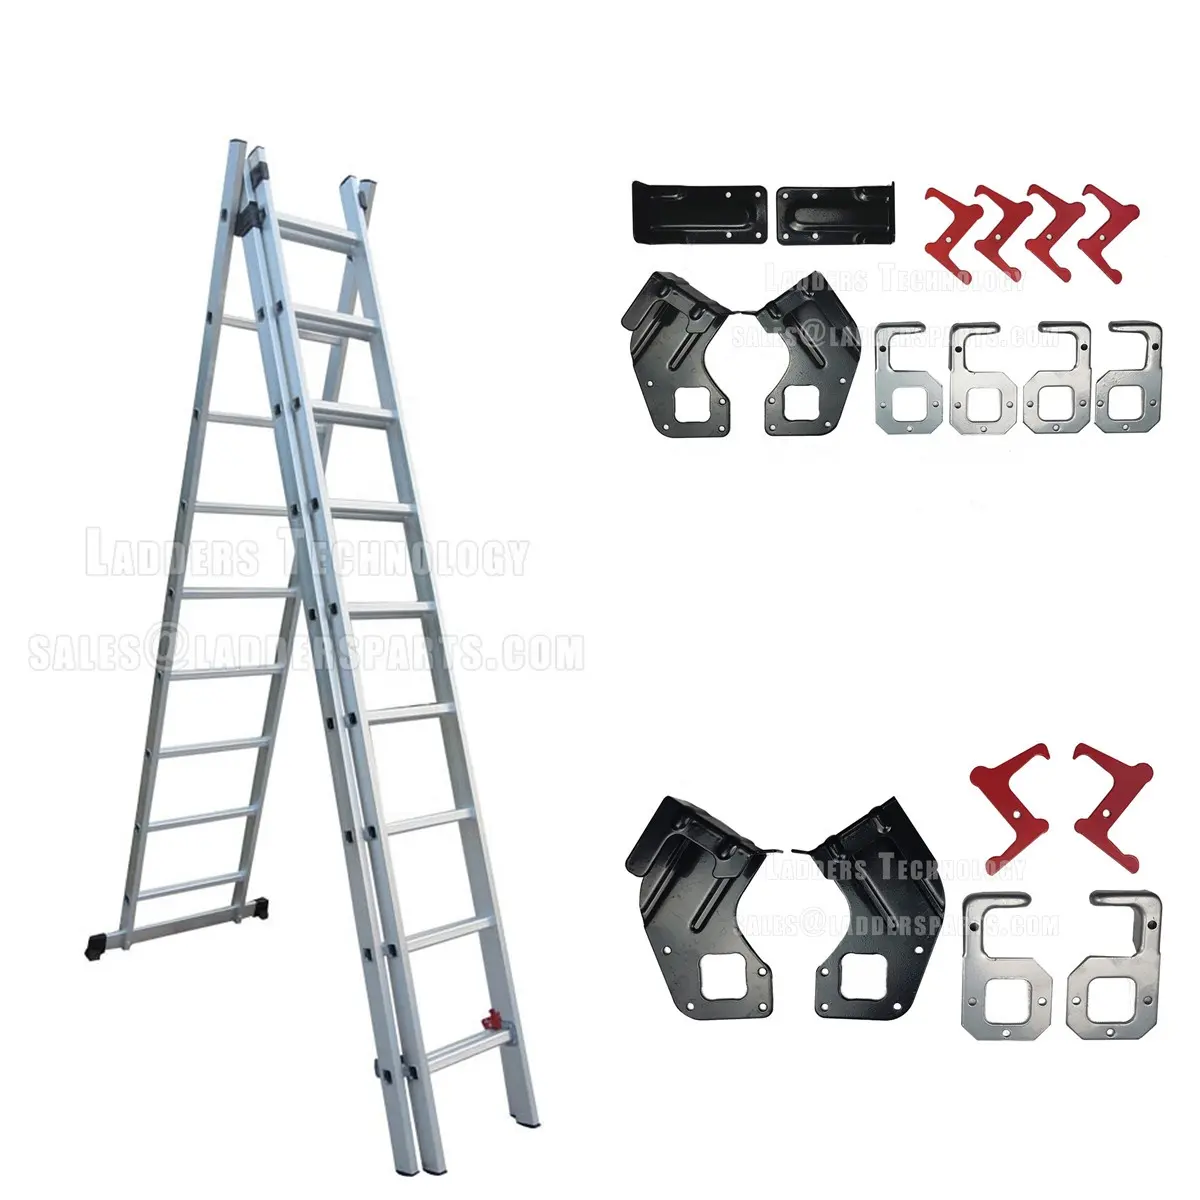 3 раздел типа алюминиевый промышленные лестницы аксессуар, лестницы частей. Металлический крючок для Алюминиевой Лестницы, лестничные петли